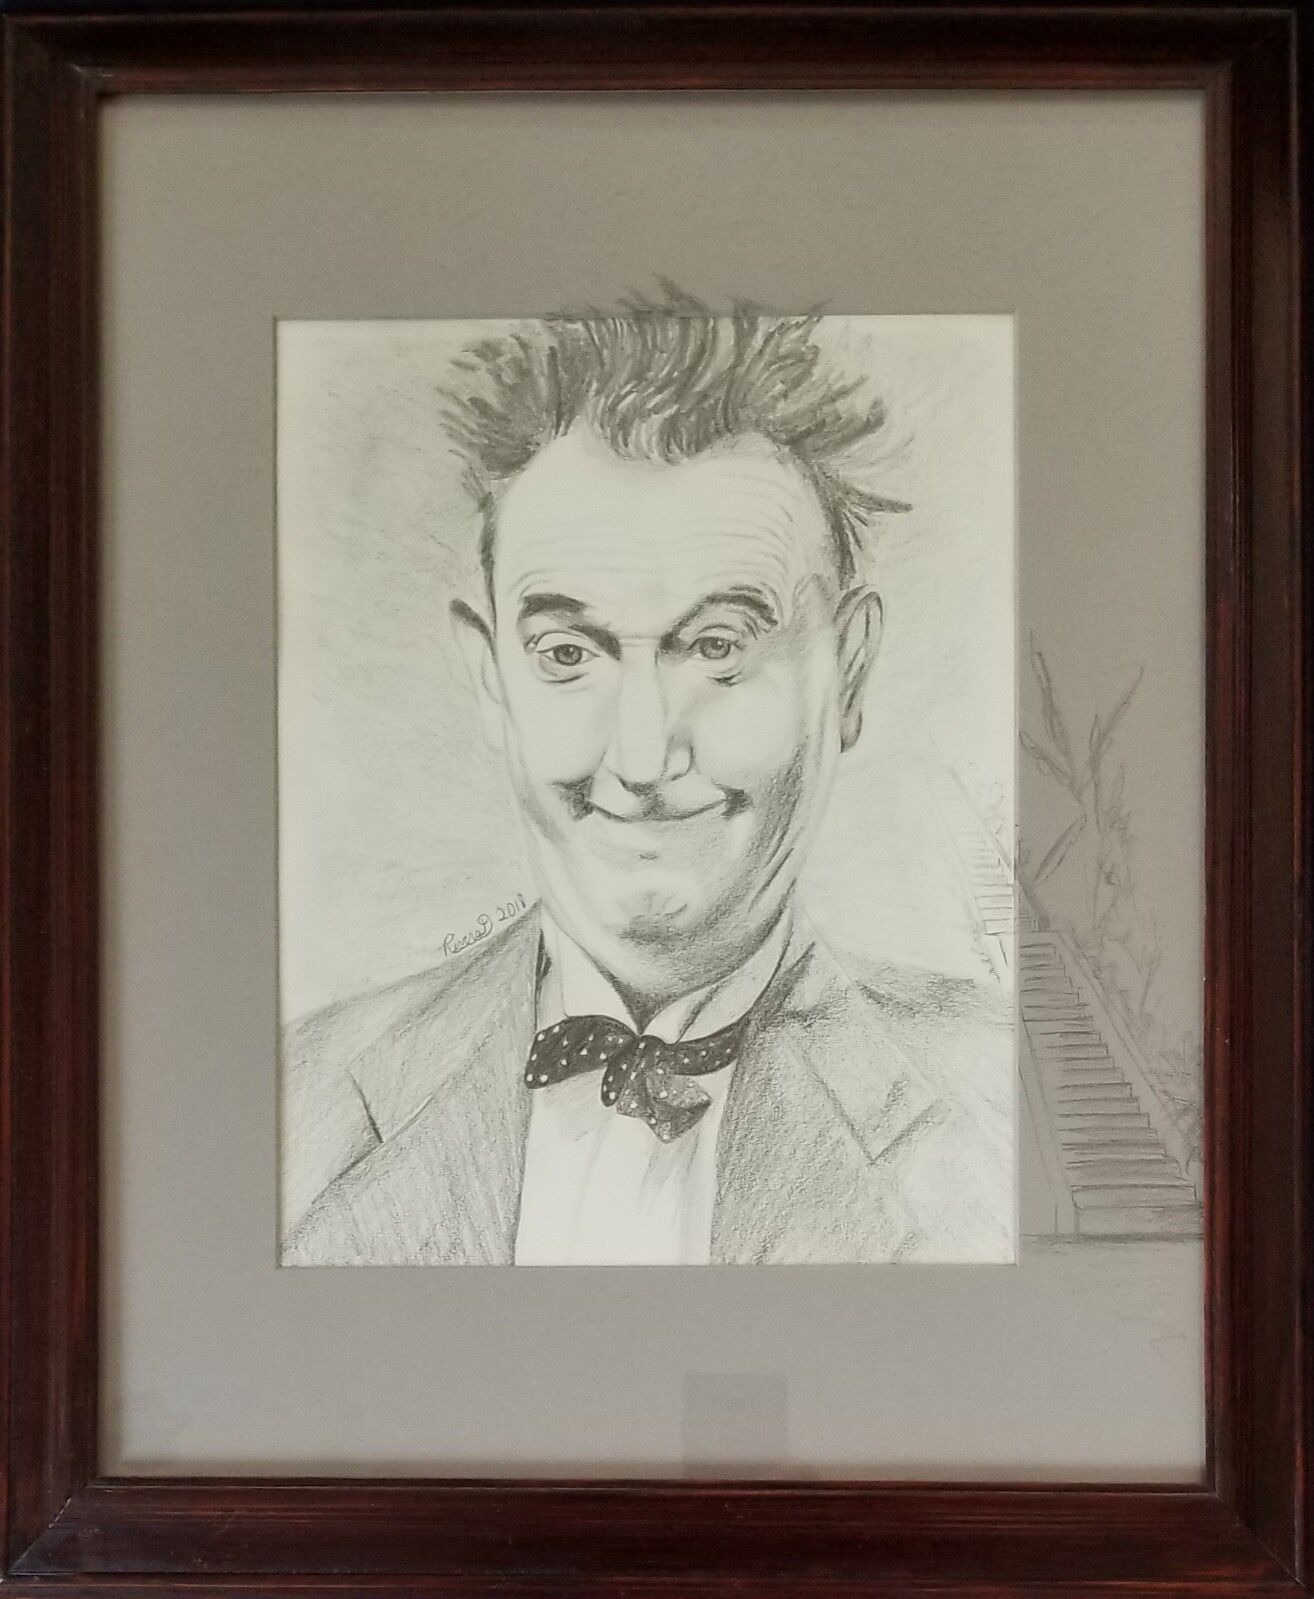 Pencil portrait of Stan Laurel